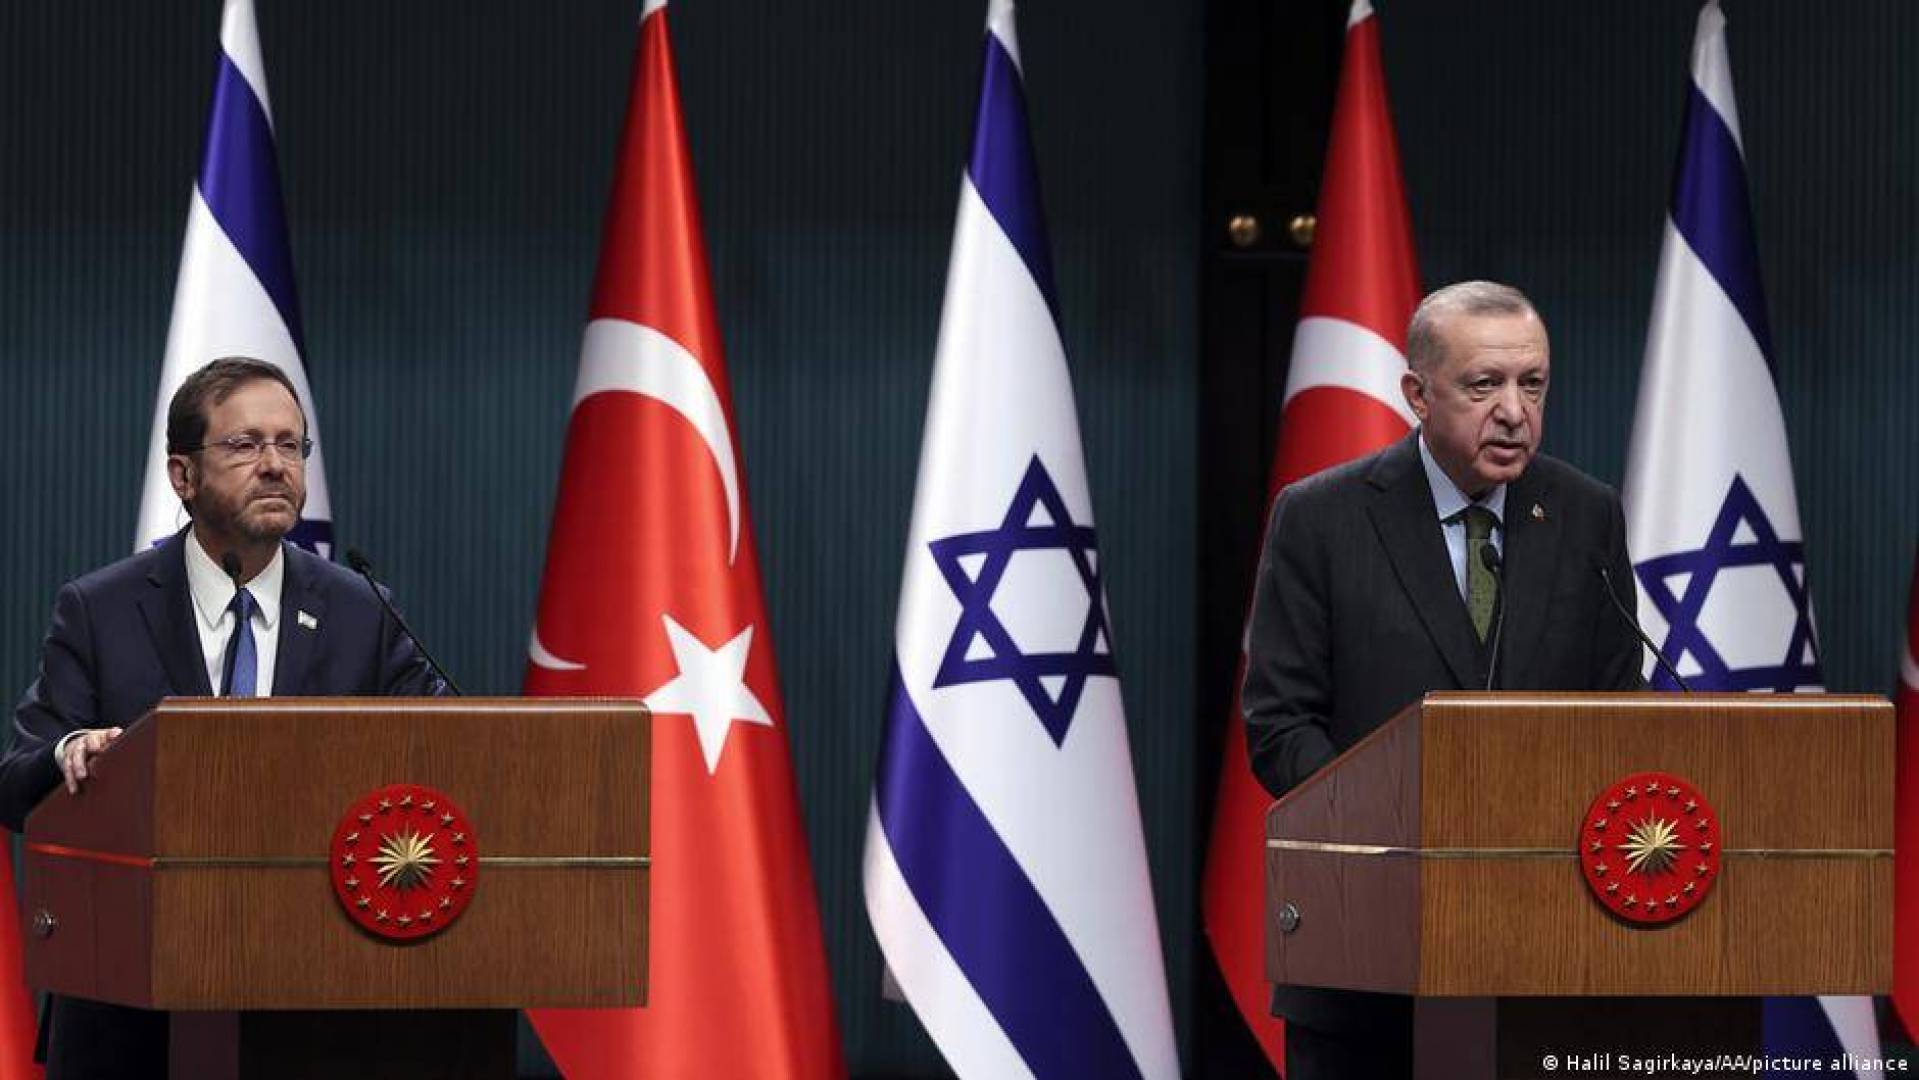 أردوغان يستنكر العمليات المقاومة في فلسطين ويعزي نظيره الصهيوني بقتلى العدو,